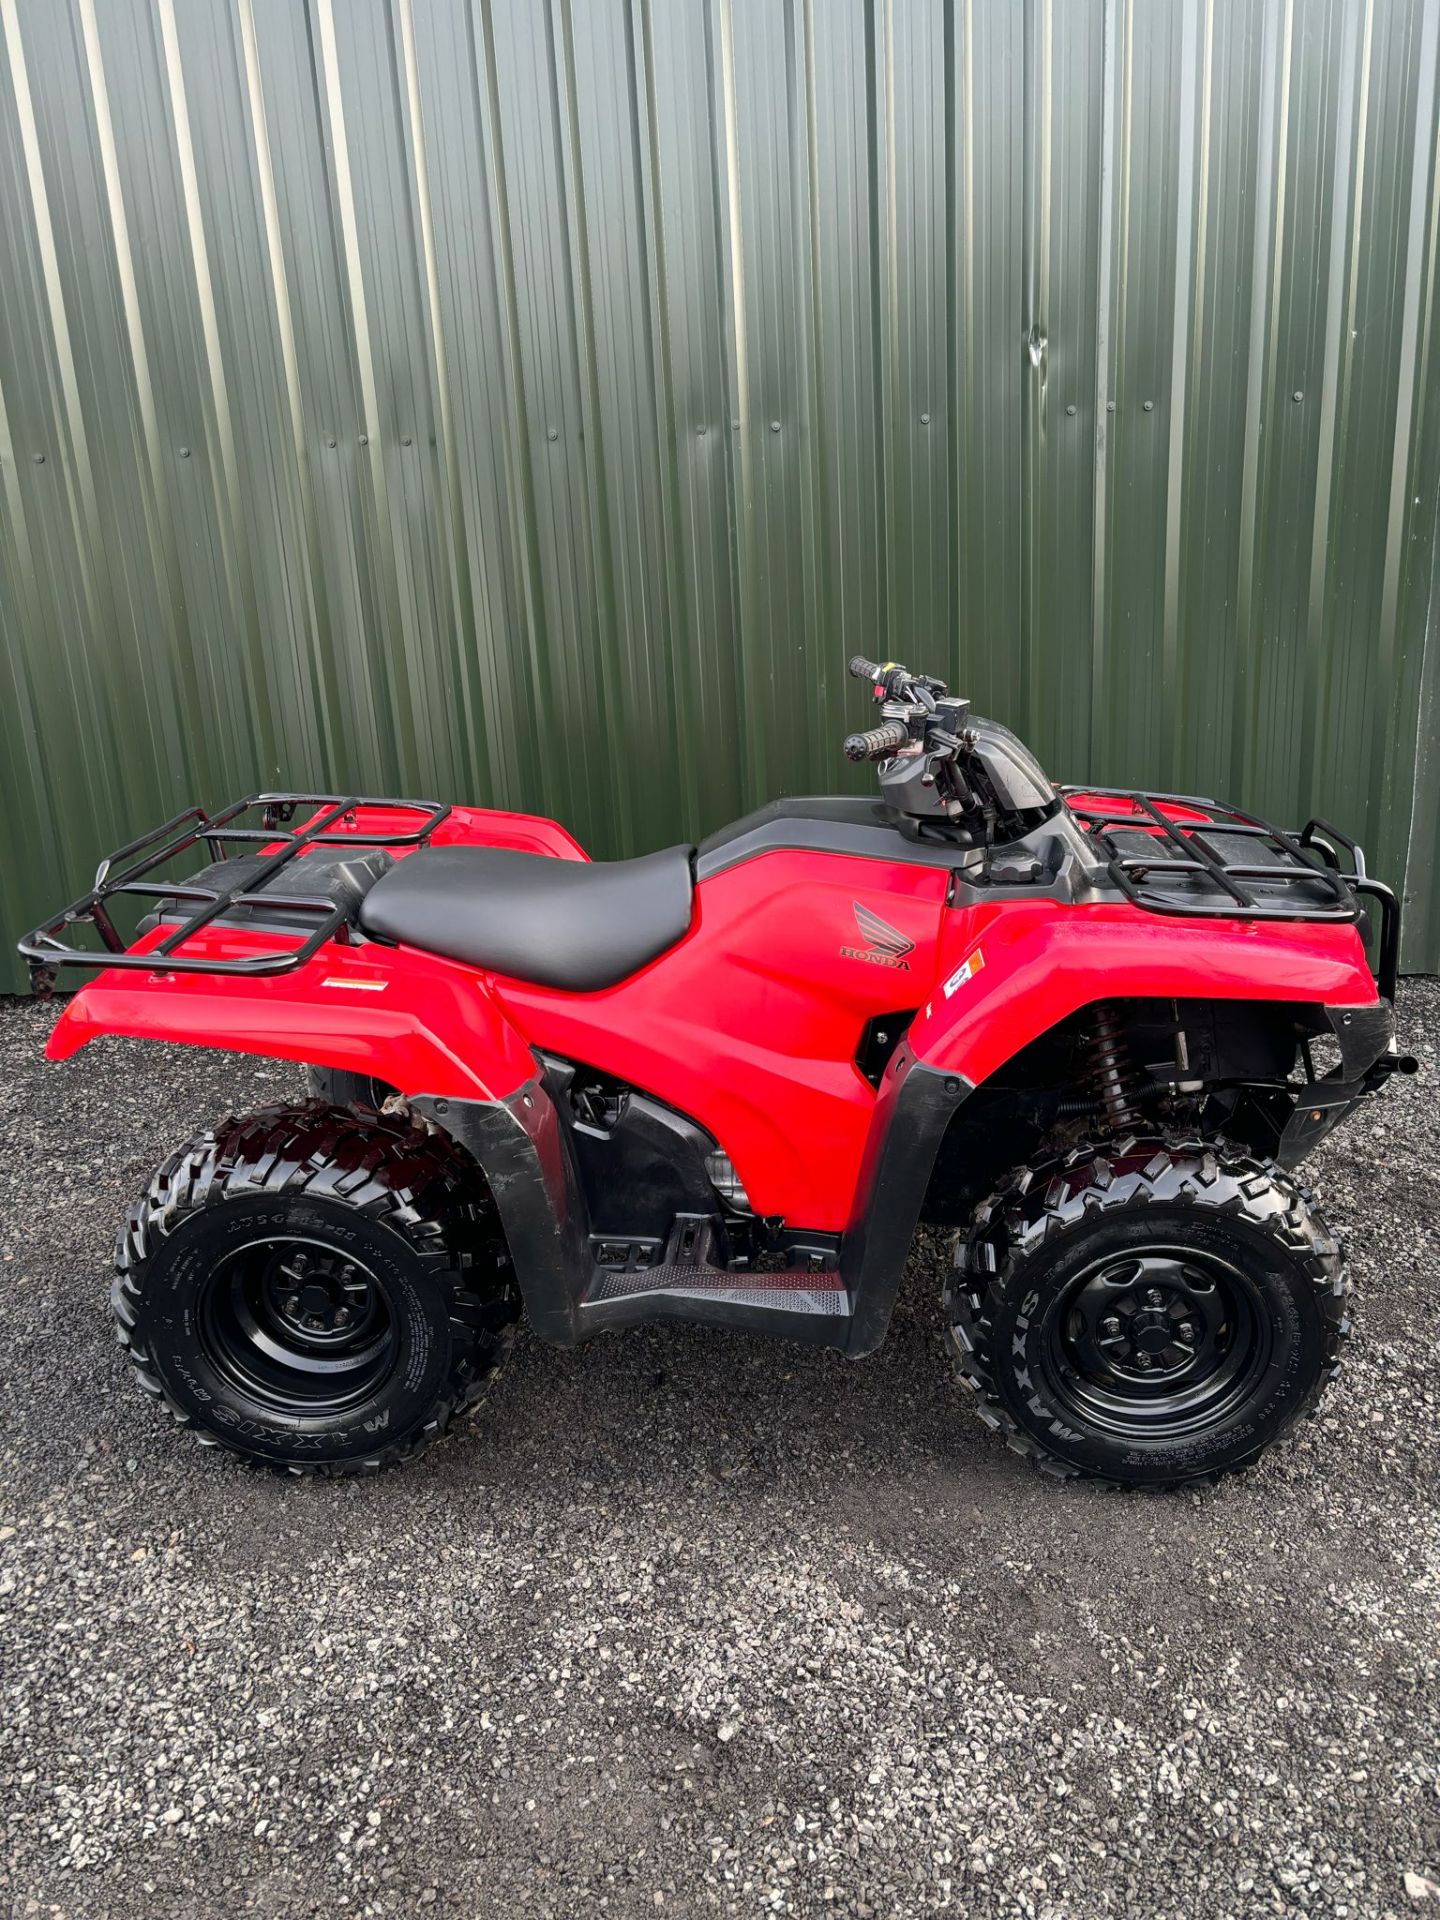 2019 ROAD REGISTERED HONDA TRX420 FARM QUAD BIKE ATV FOURTRAX TRX 420FM 4X4 4WD - Image 4 of 11